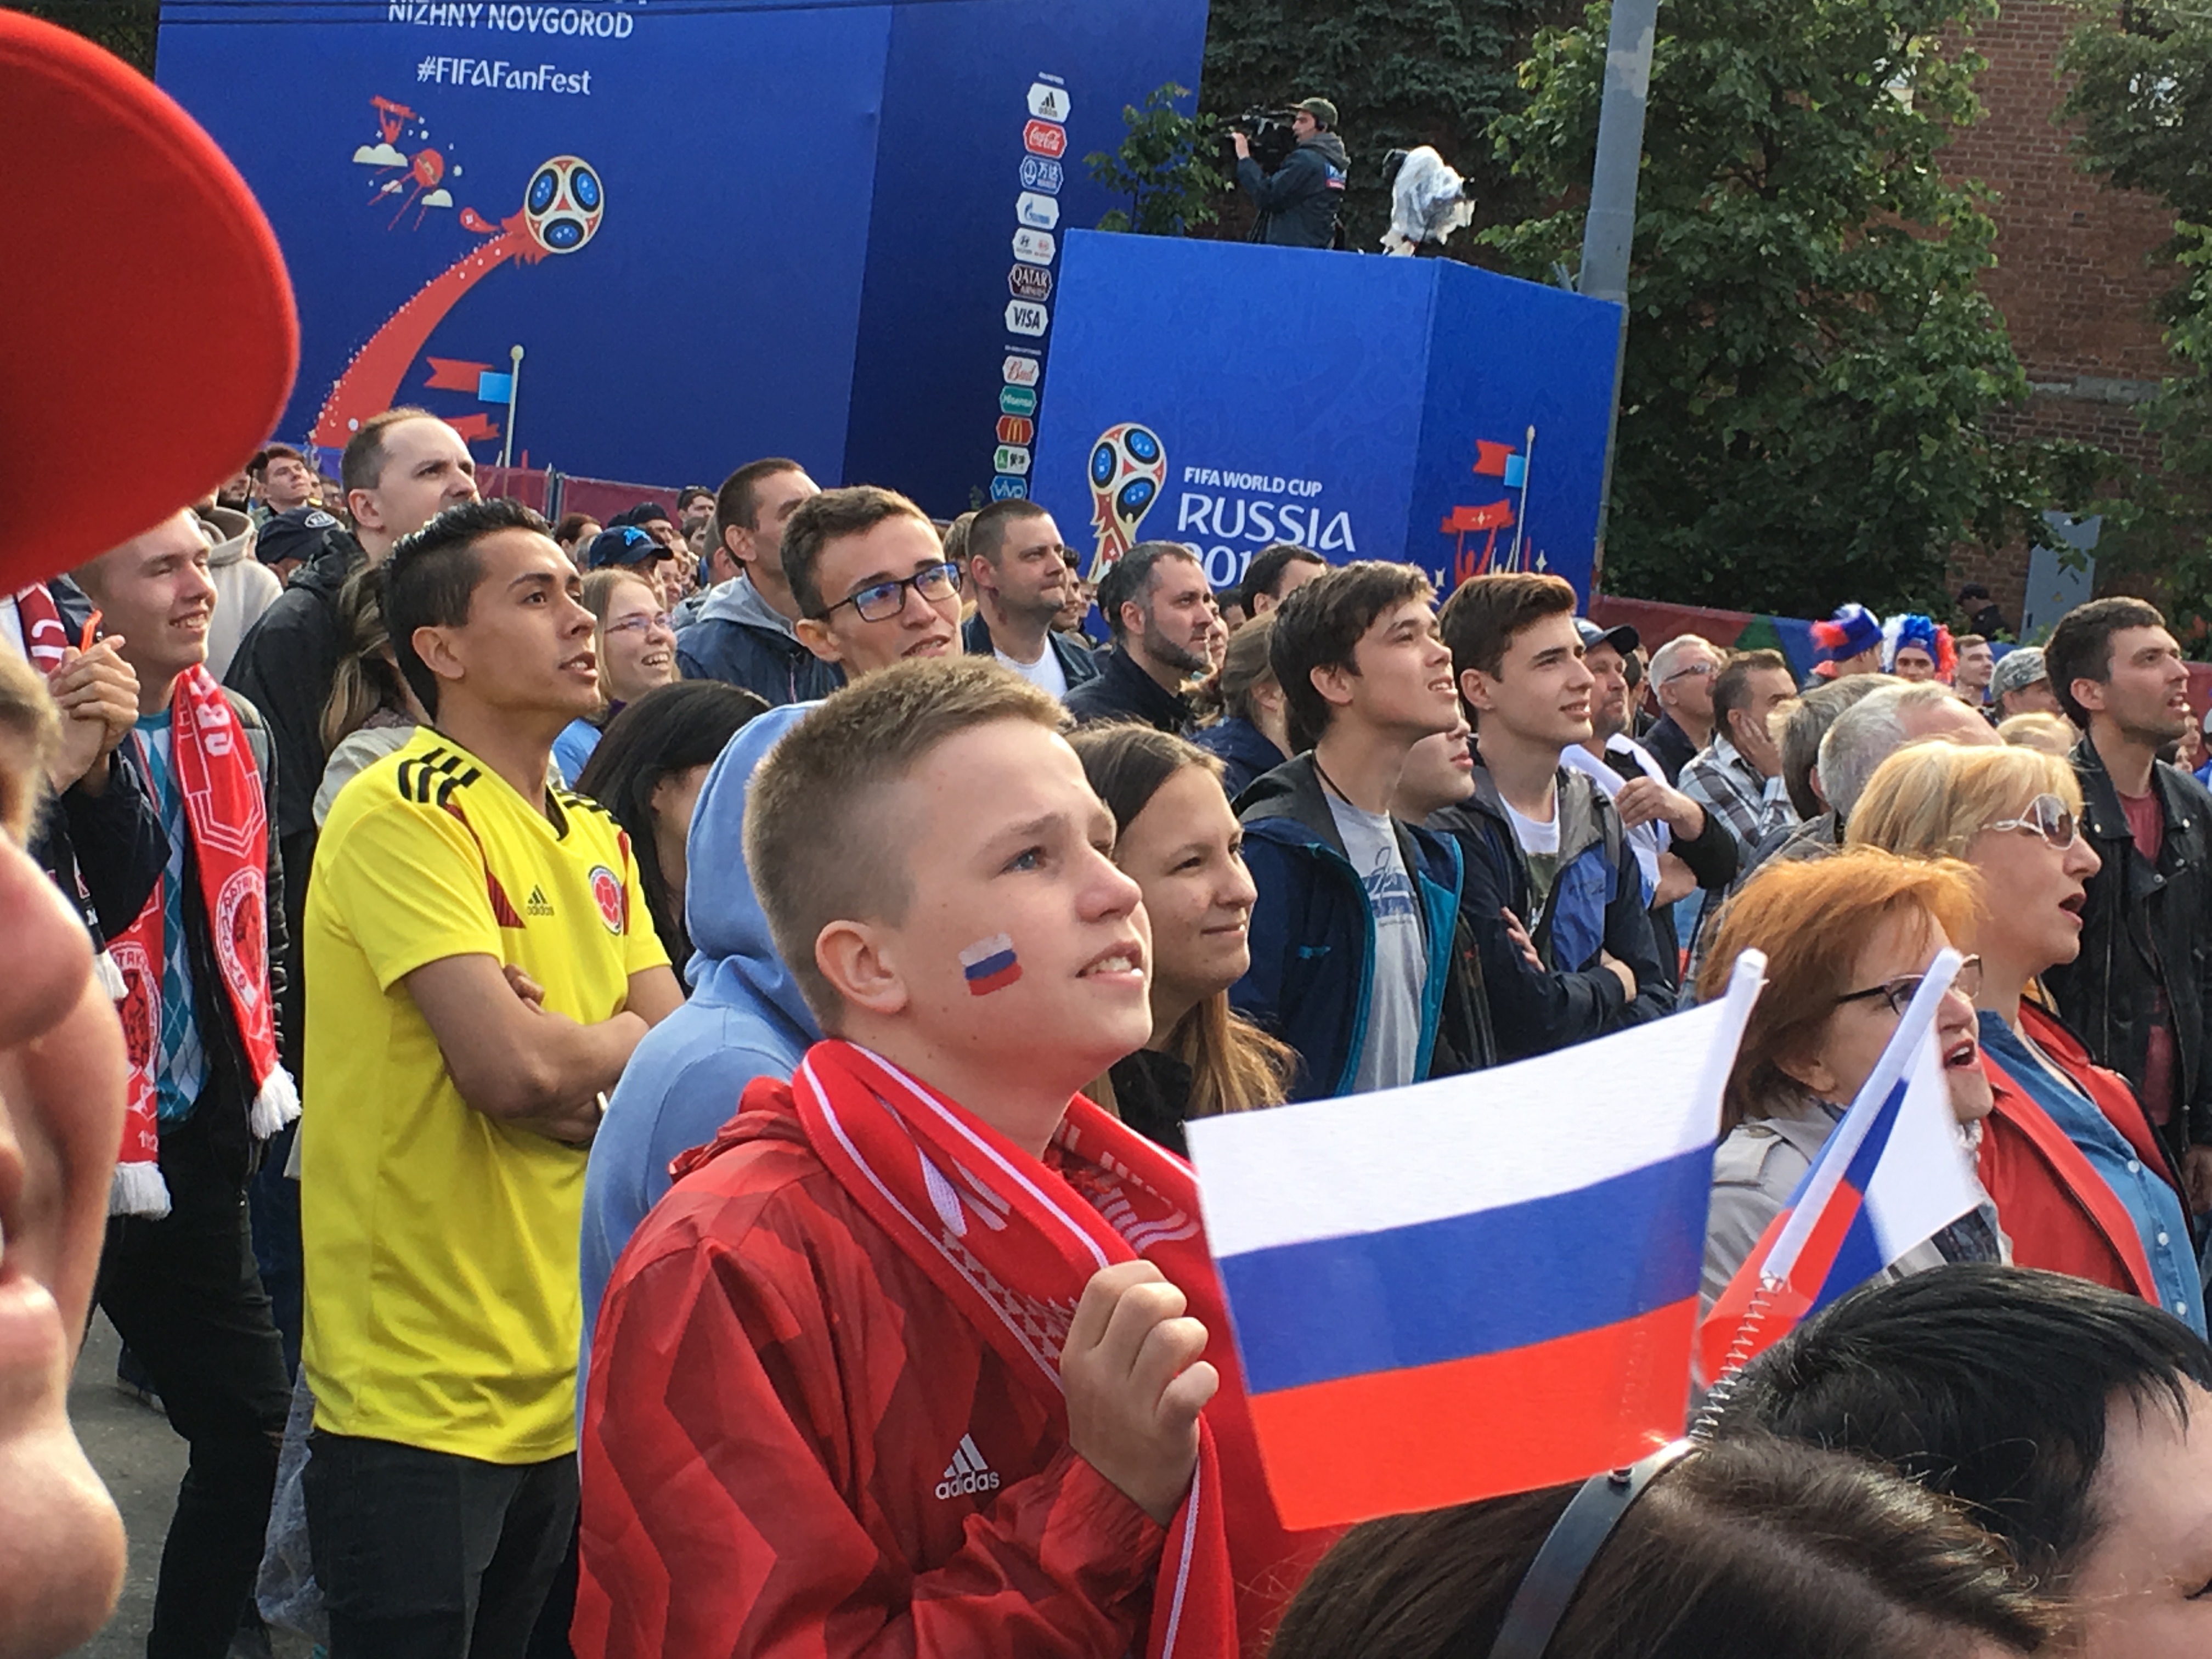 Более 26 тысяч человек побывали на открытии Фестиваля болельщиков FIFA в Нижнем Новгороде (ФОТО, ВИДЕО) - фото 5